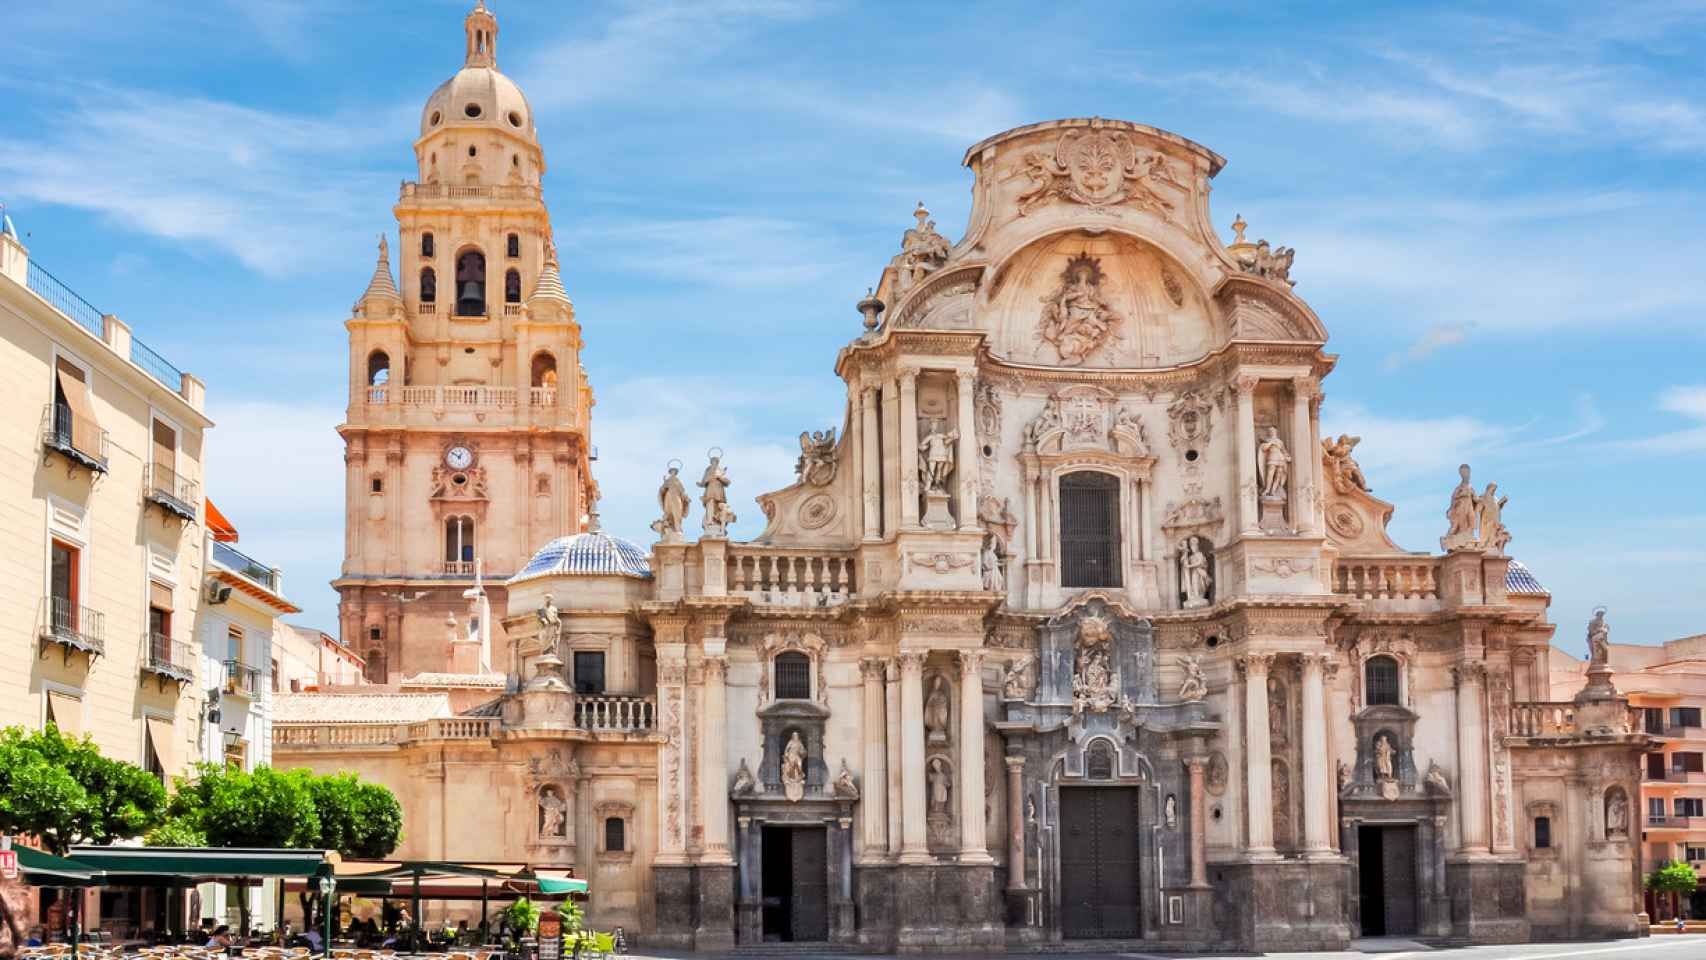 Esta es la ciudad española que no te puedes perder, según 'Daily Mail'